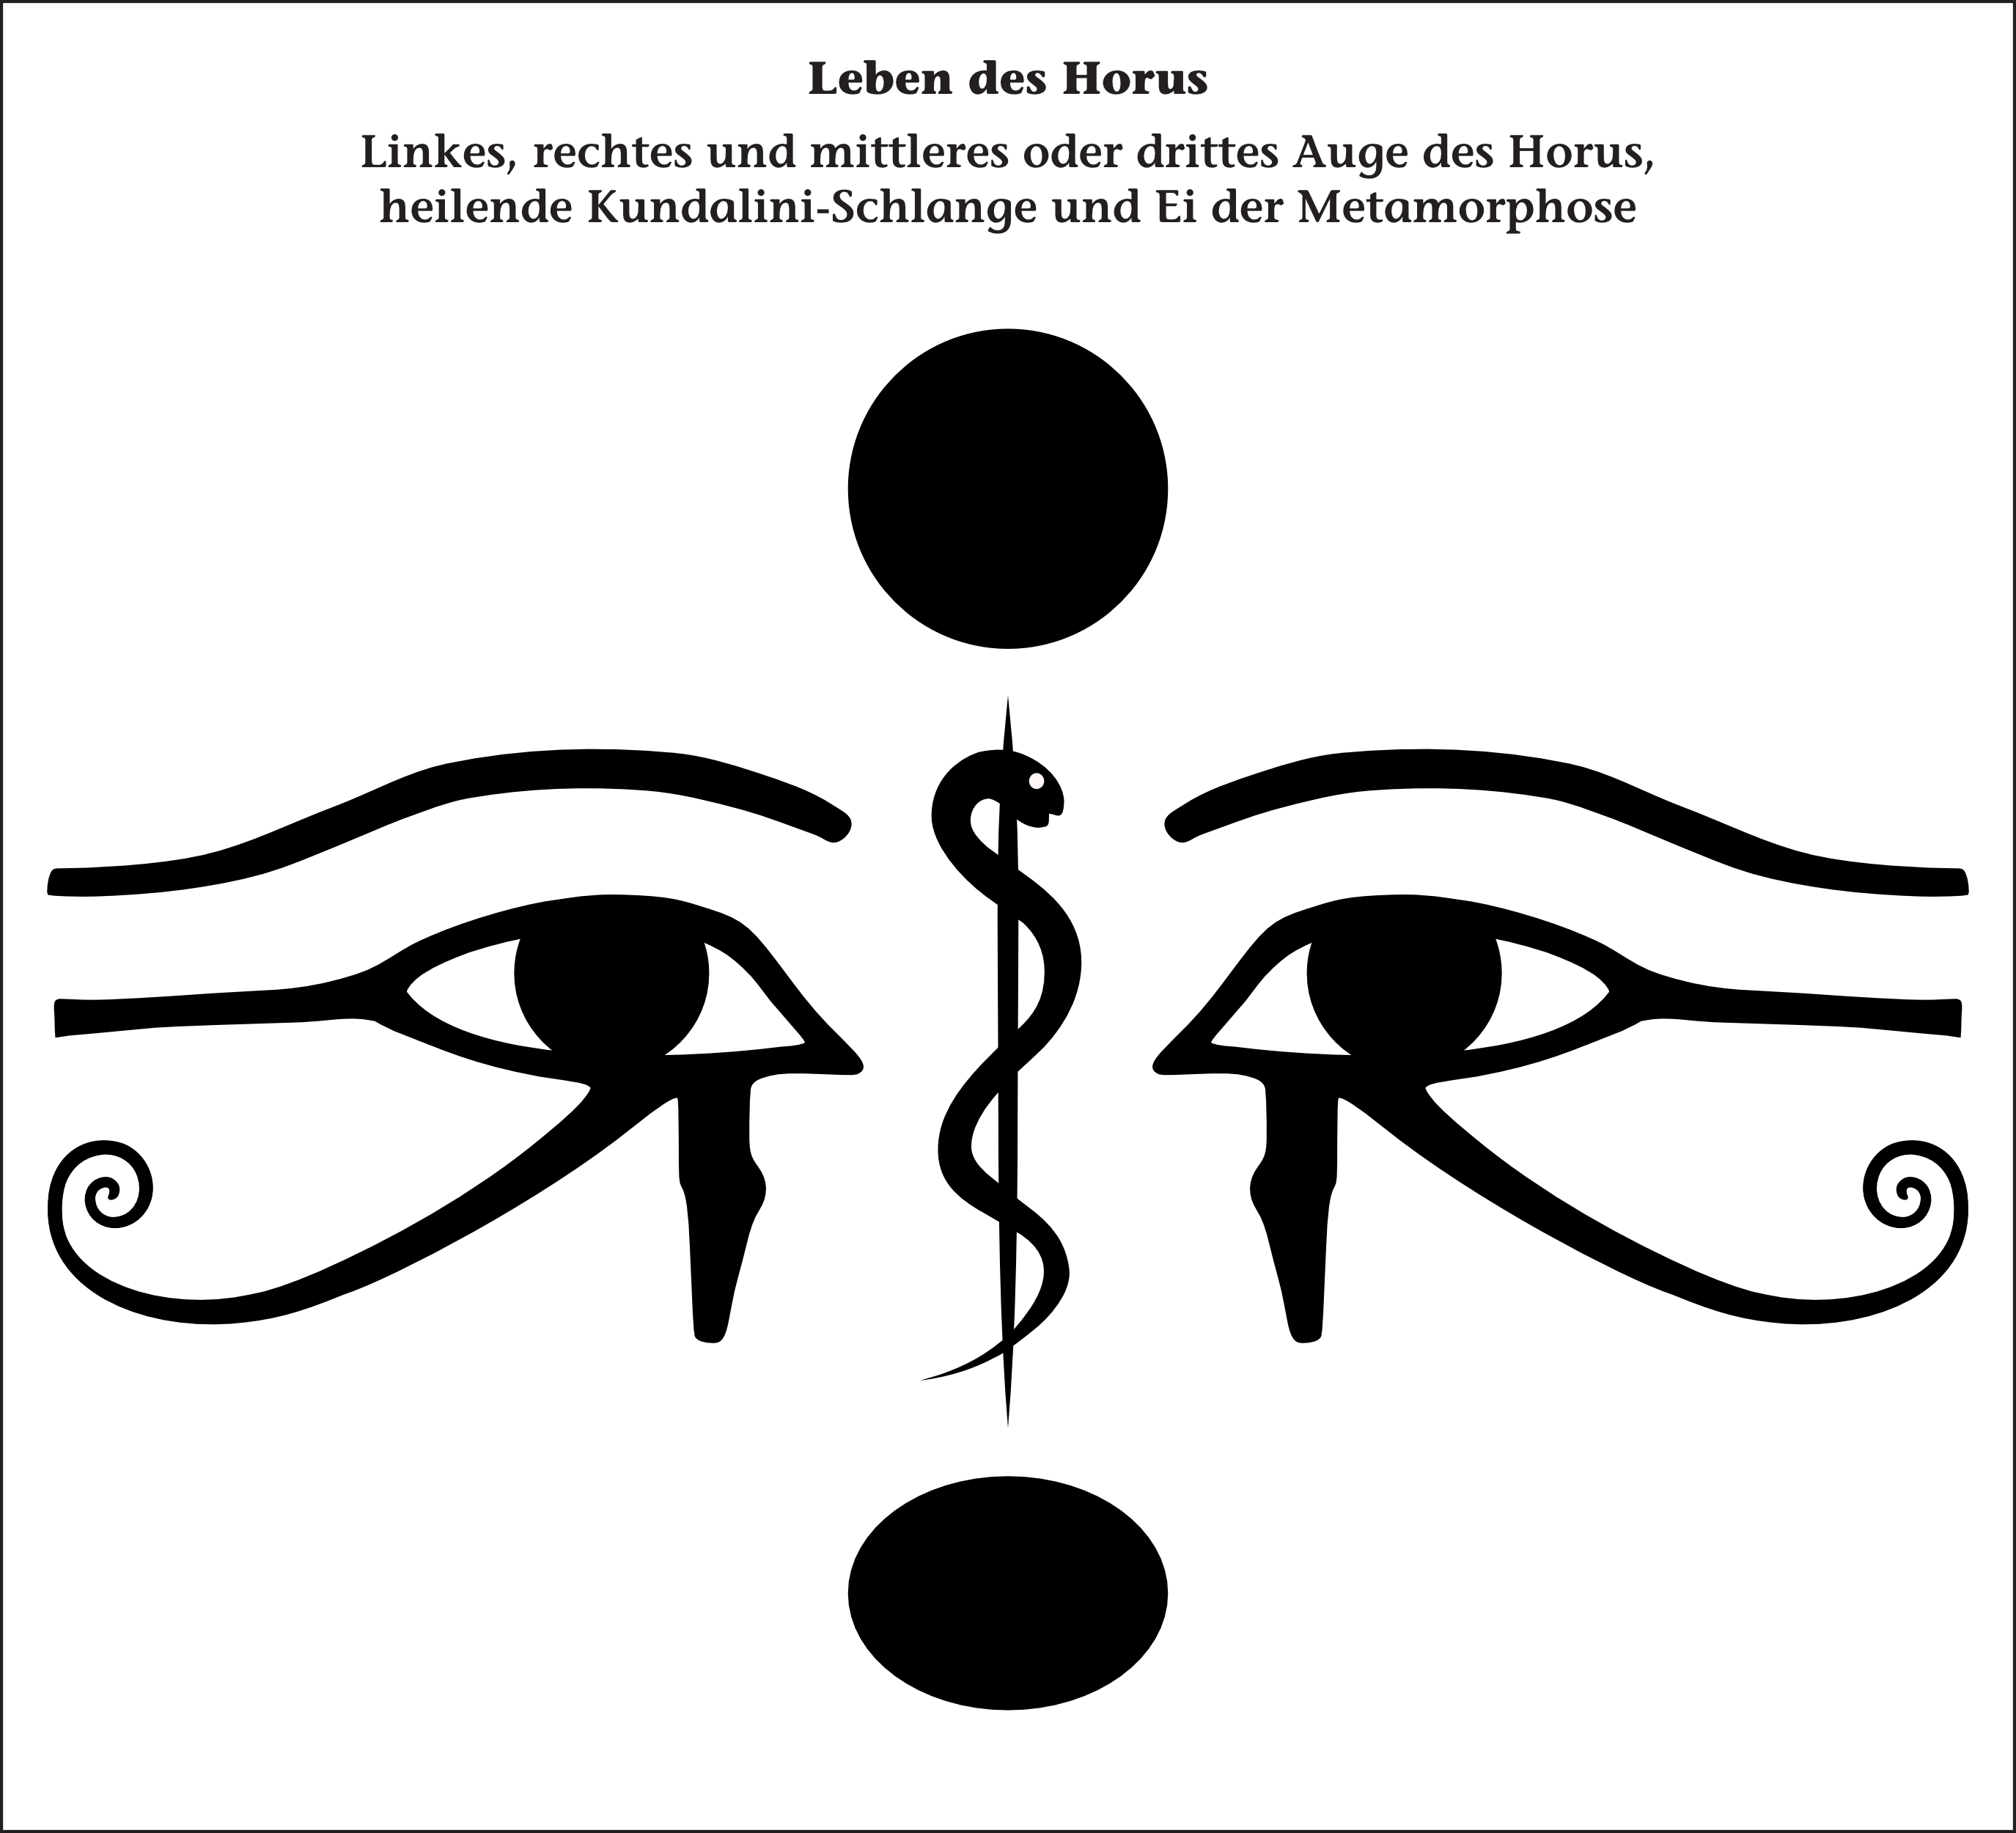 Leben des Horus mit Asklepiosstab